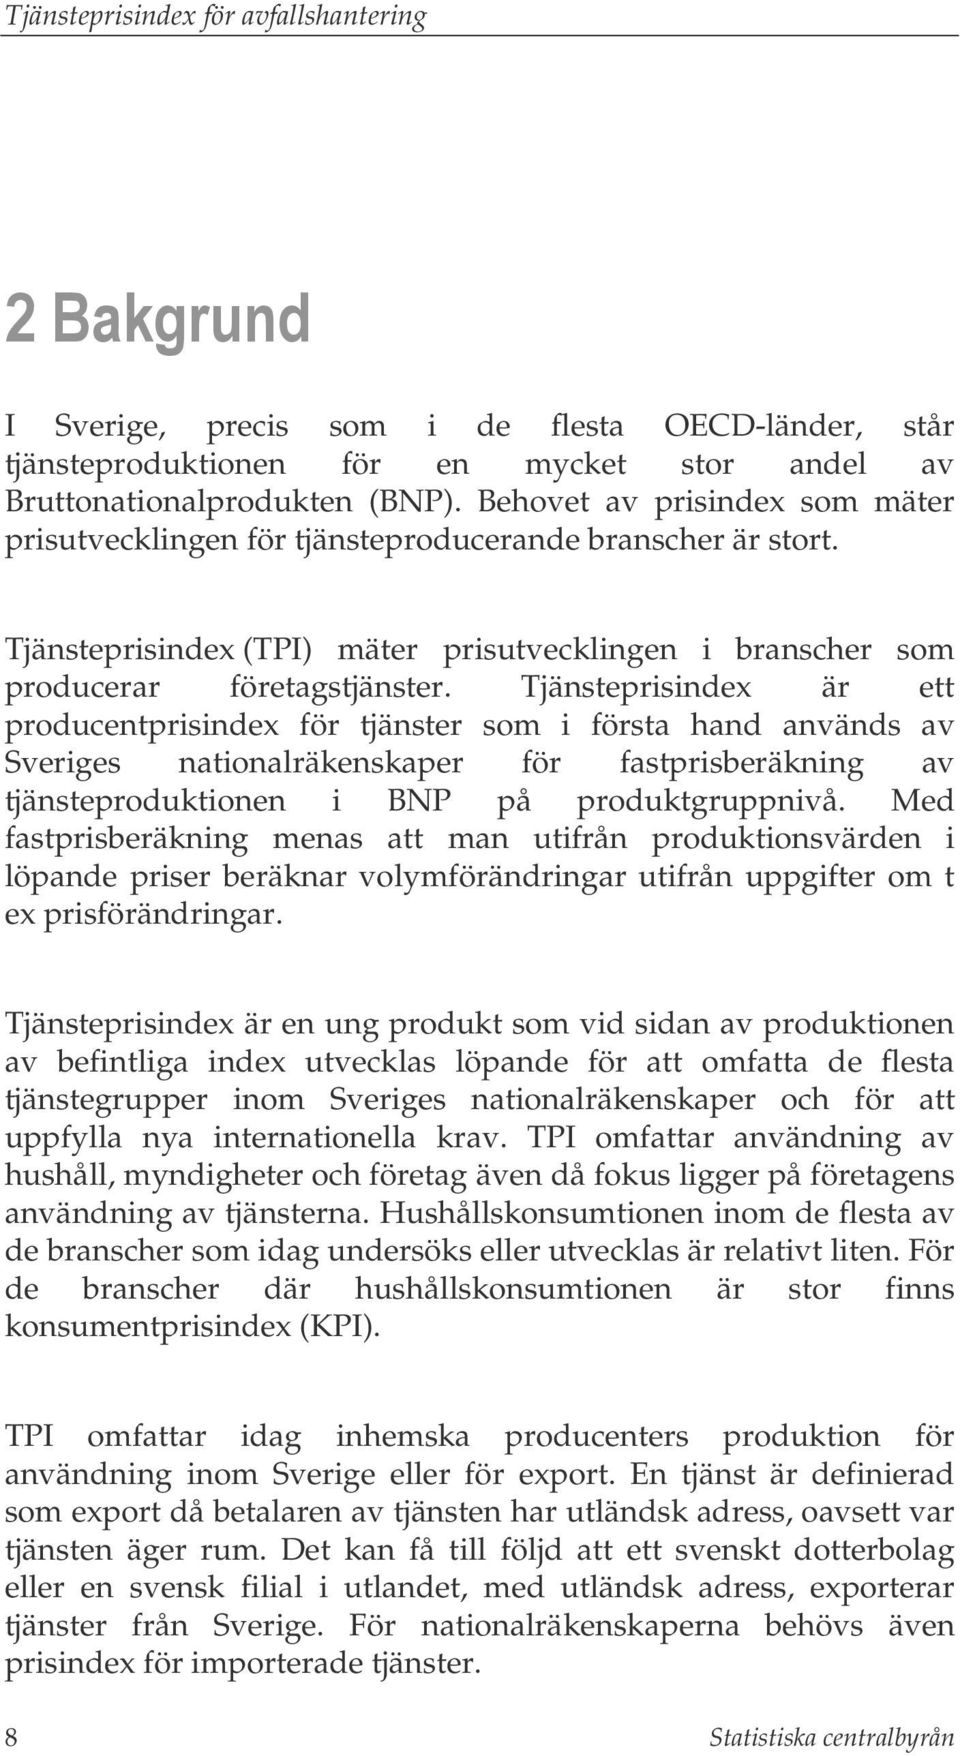 Tjänsteprisindex är ett producentprisindex för tjänster som i första hand används av Sveriges nationalräkenskaper för fastprisberäkning av tjänsteproduktionen i BNP på produktgruppnivå.